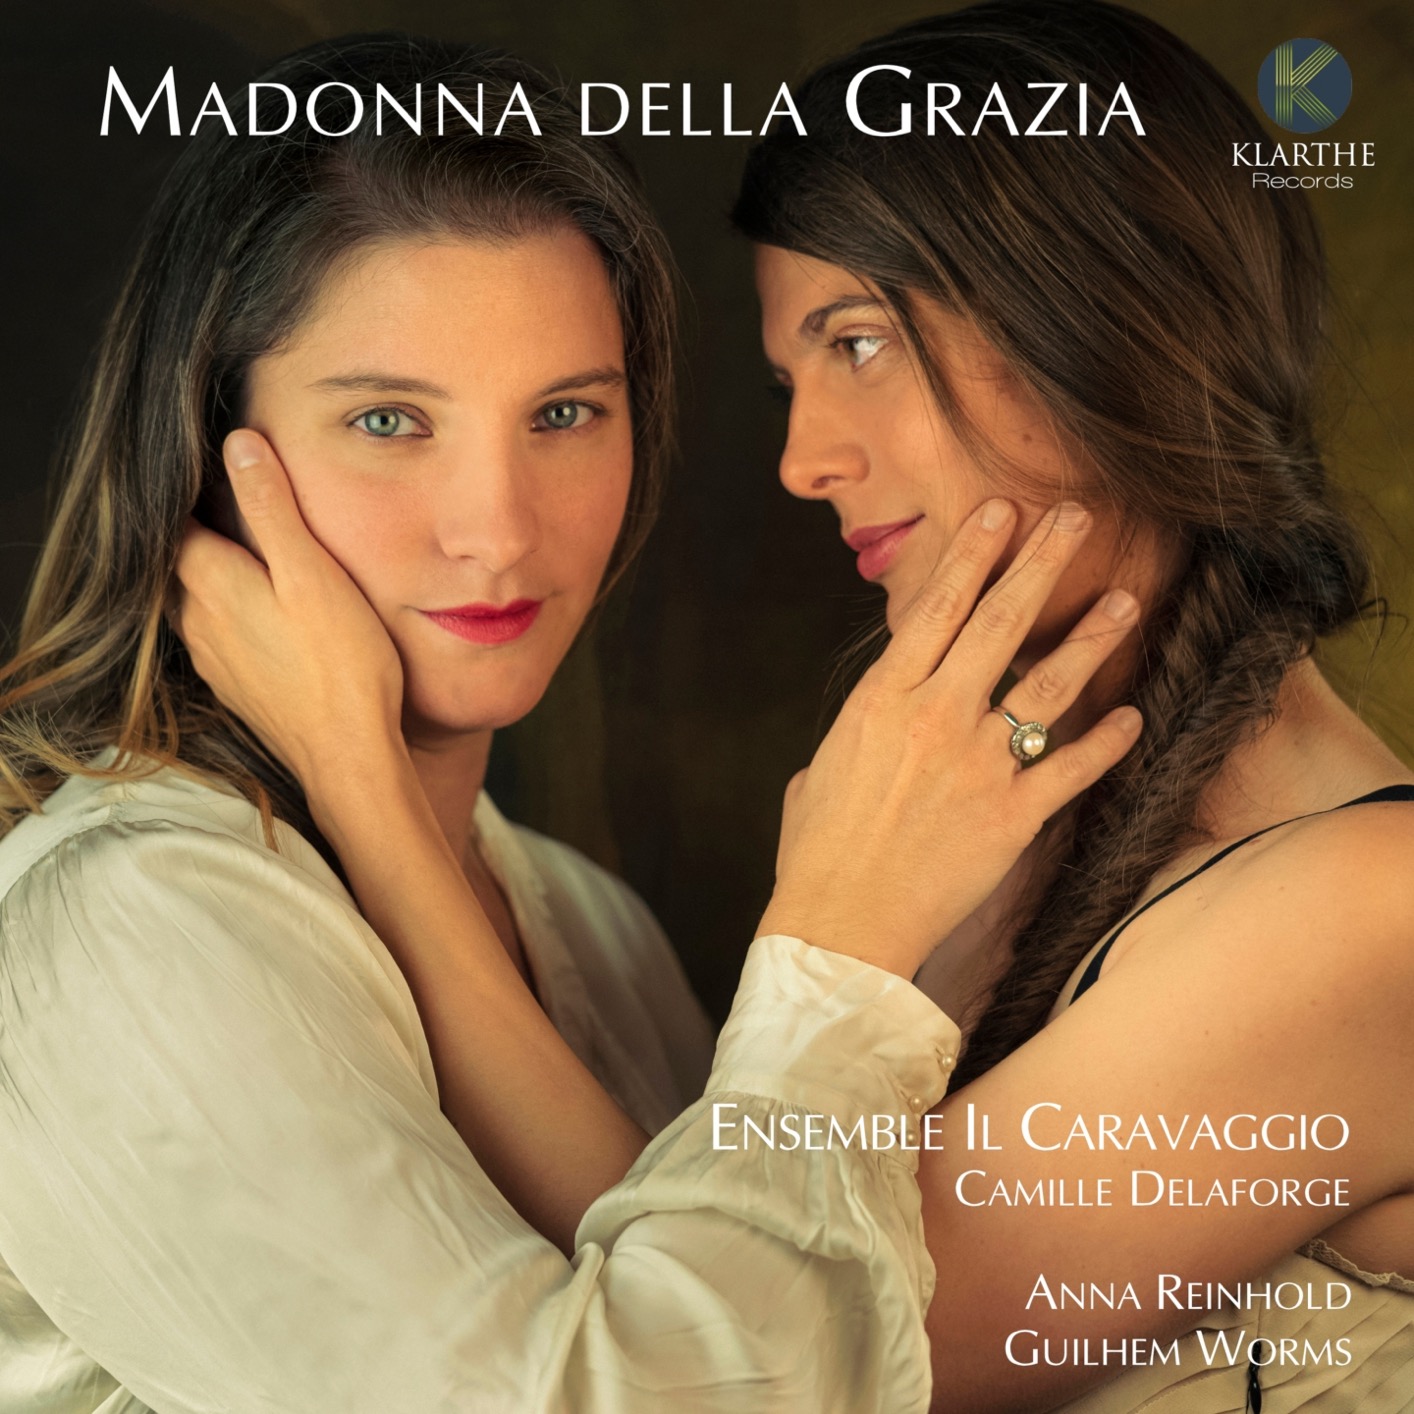 Ensemble Il Caravaggio & Camille Delaforge - Madonna della Grazia (2021) [FLAC 24bit/192kHz]